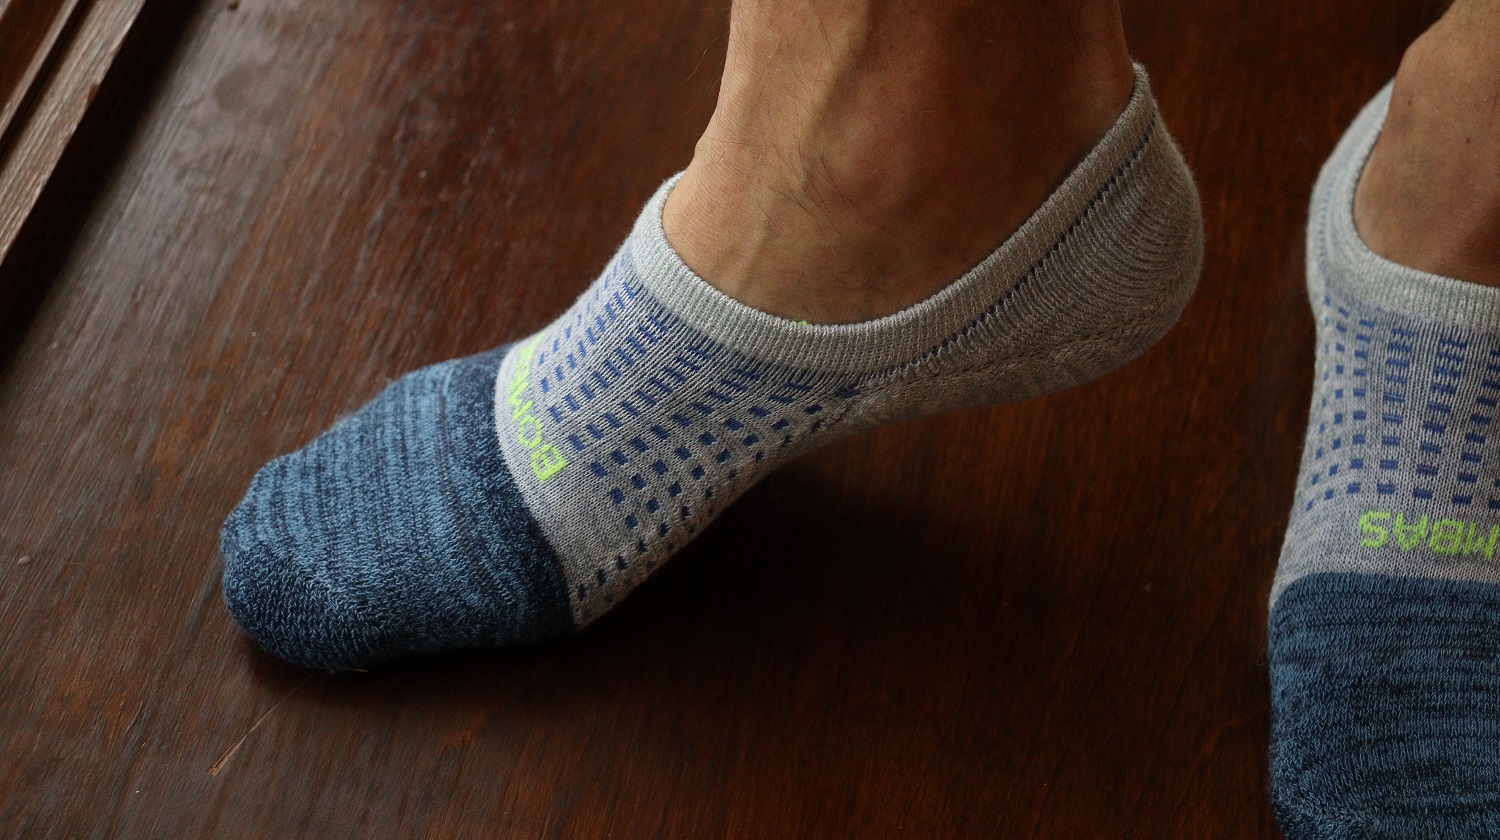 LULULEMON Three-Pack Power Stride Stretch-Knit Socks for Men